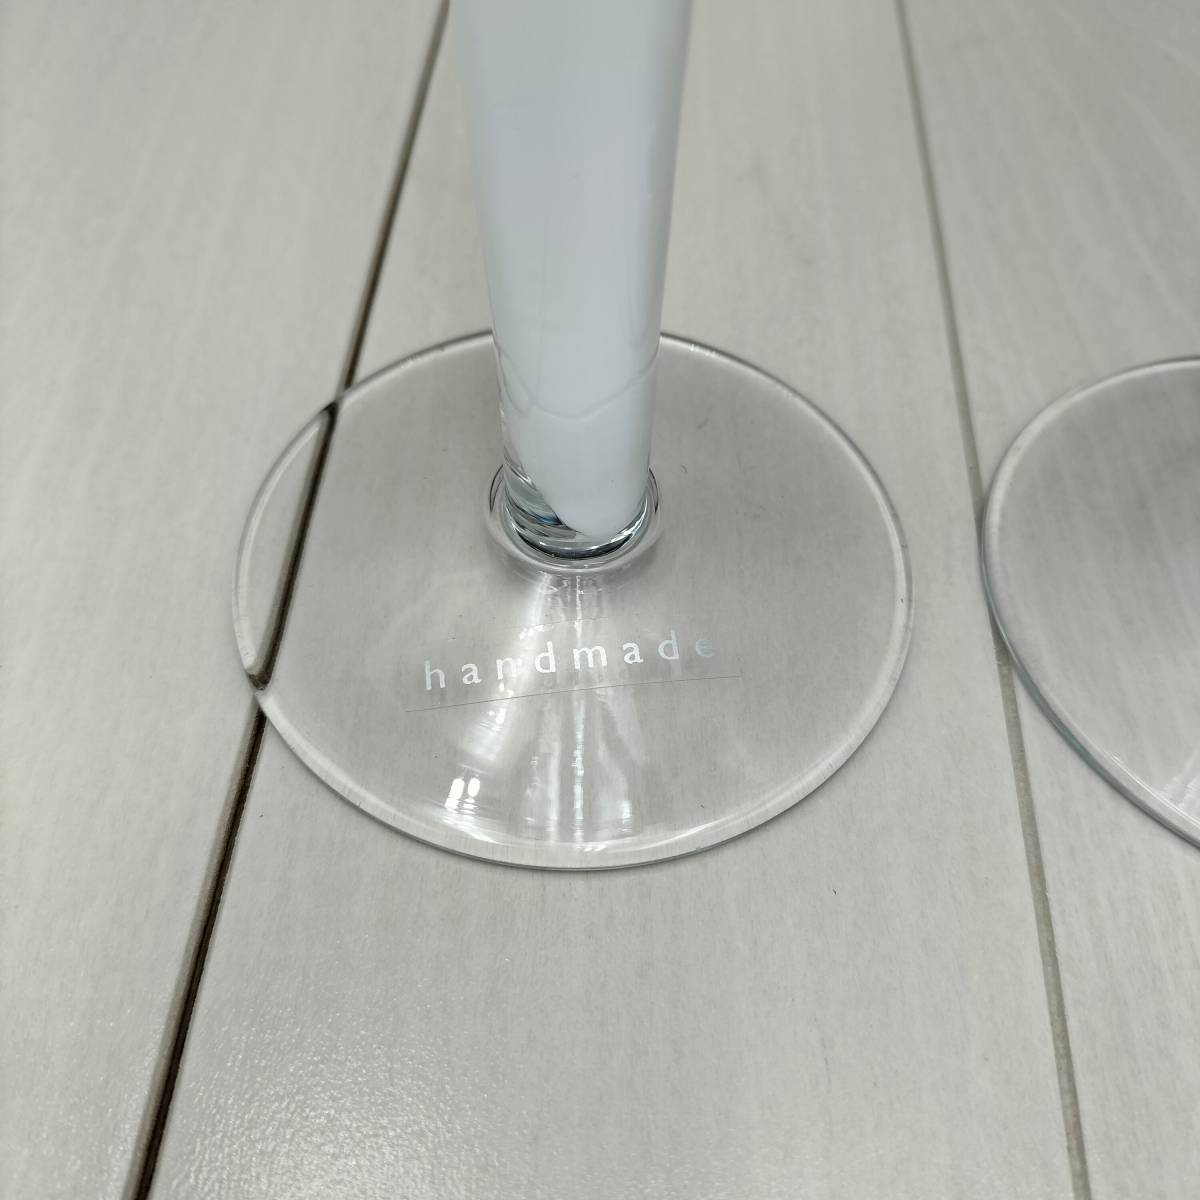 (G-2312TW59)*LSA* L ese-* cocktail glass *2 point *Φ7cm×H24.5cm* white * glass made *